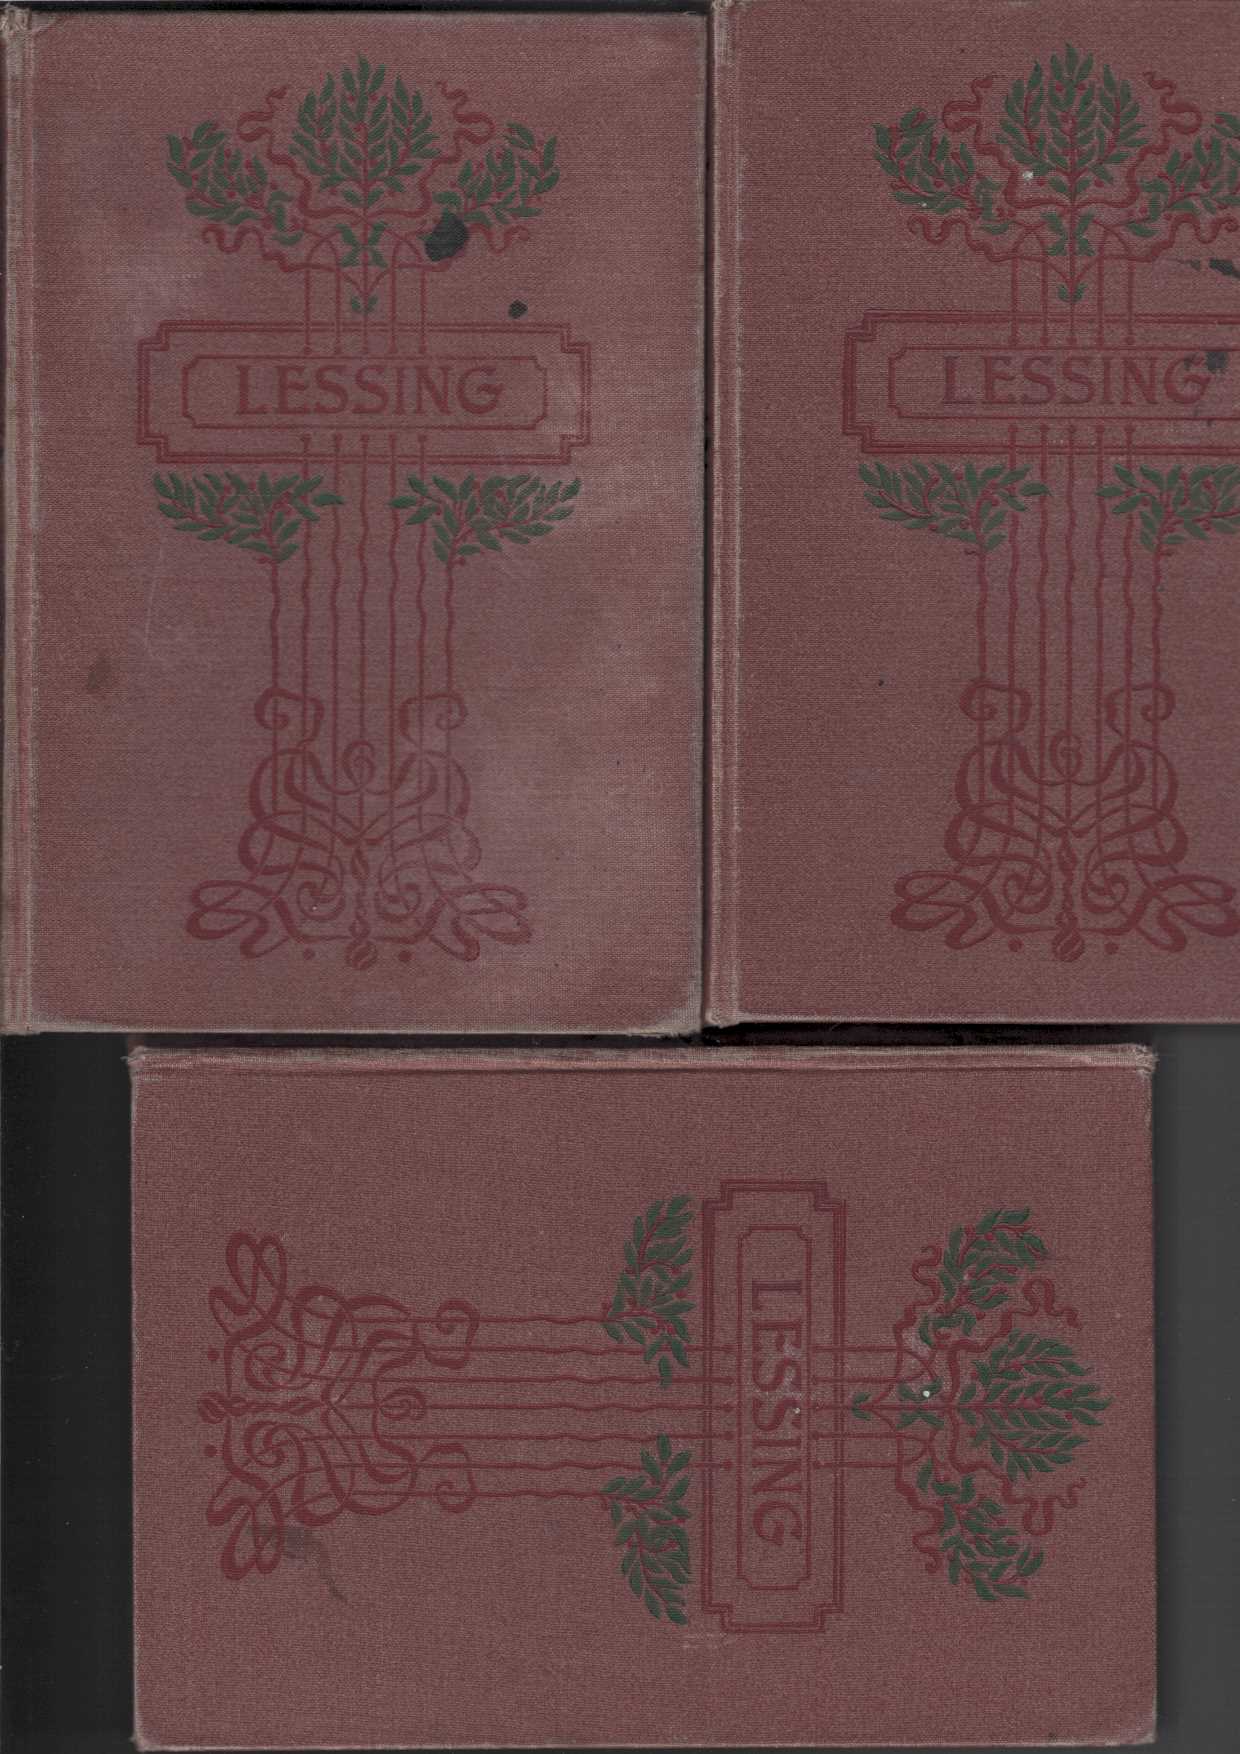 G. E. Lessings Gesammelte Werke in drei (3) Bänden.